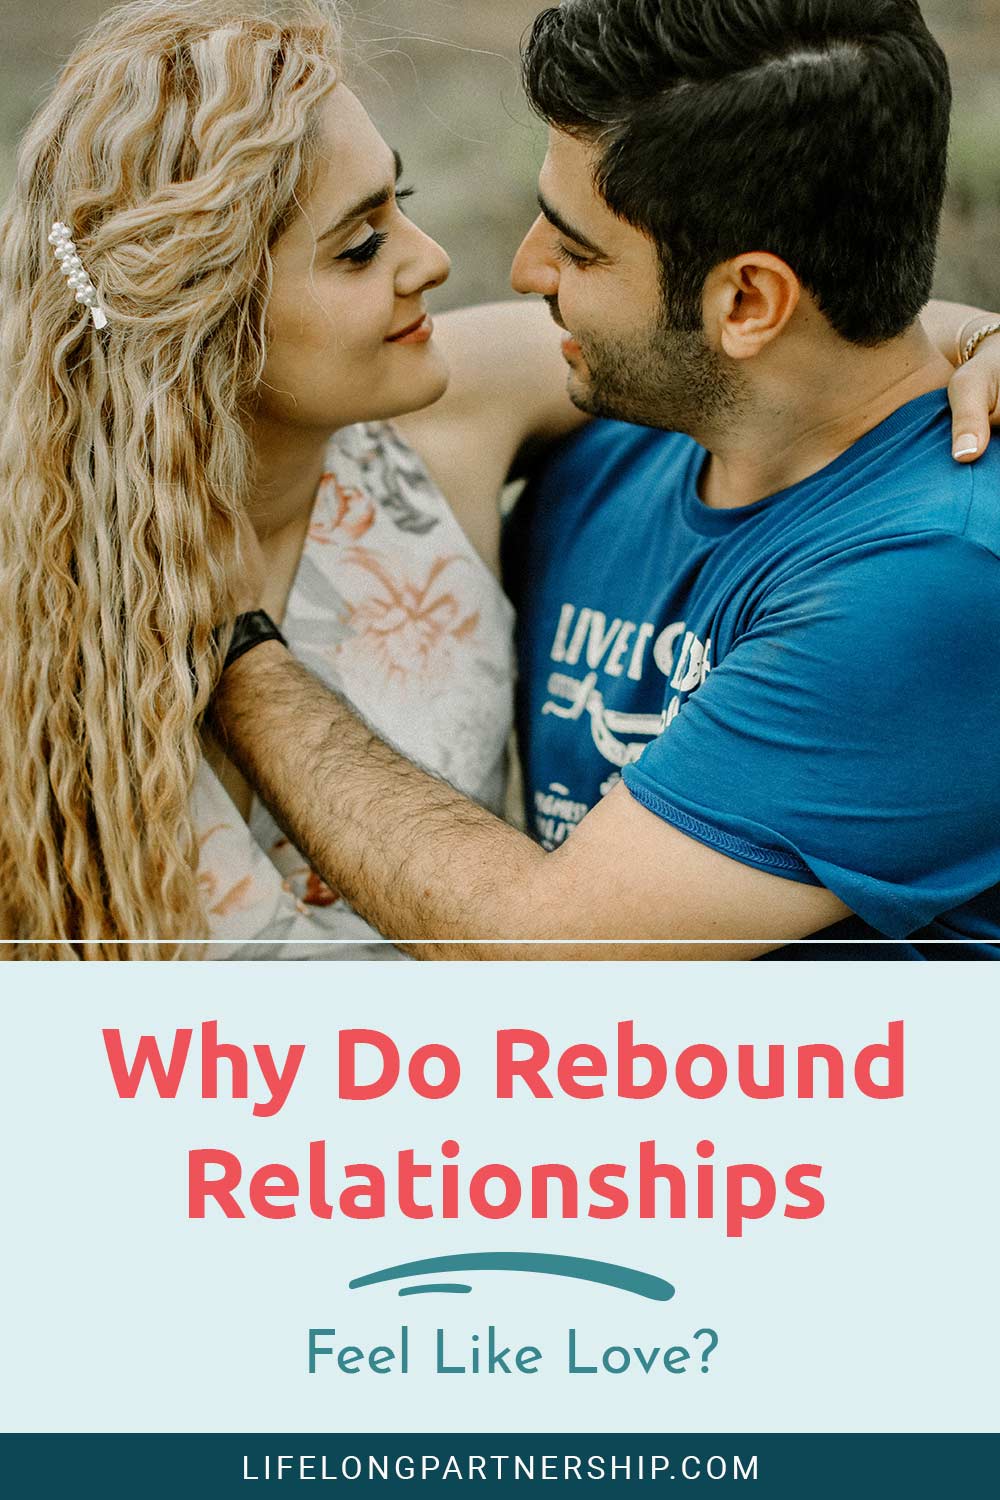 Why Do Rebound Relationships Feel Like Love?